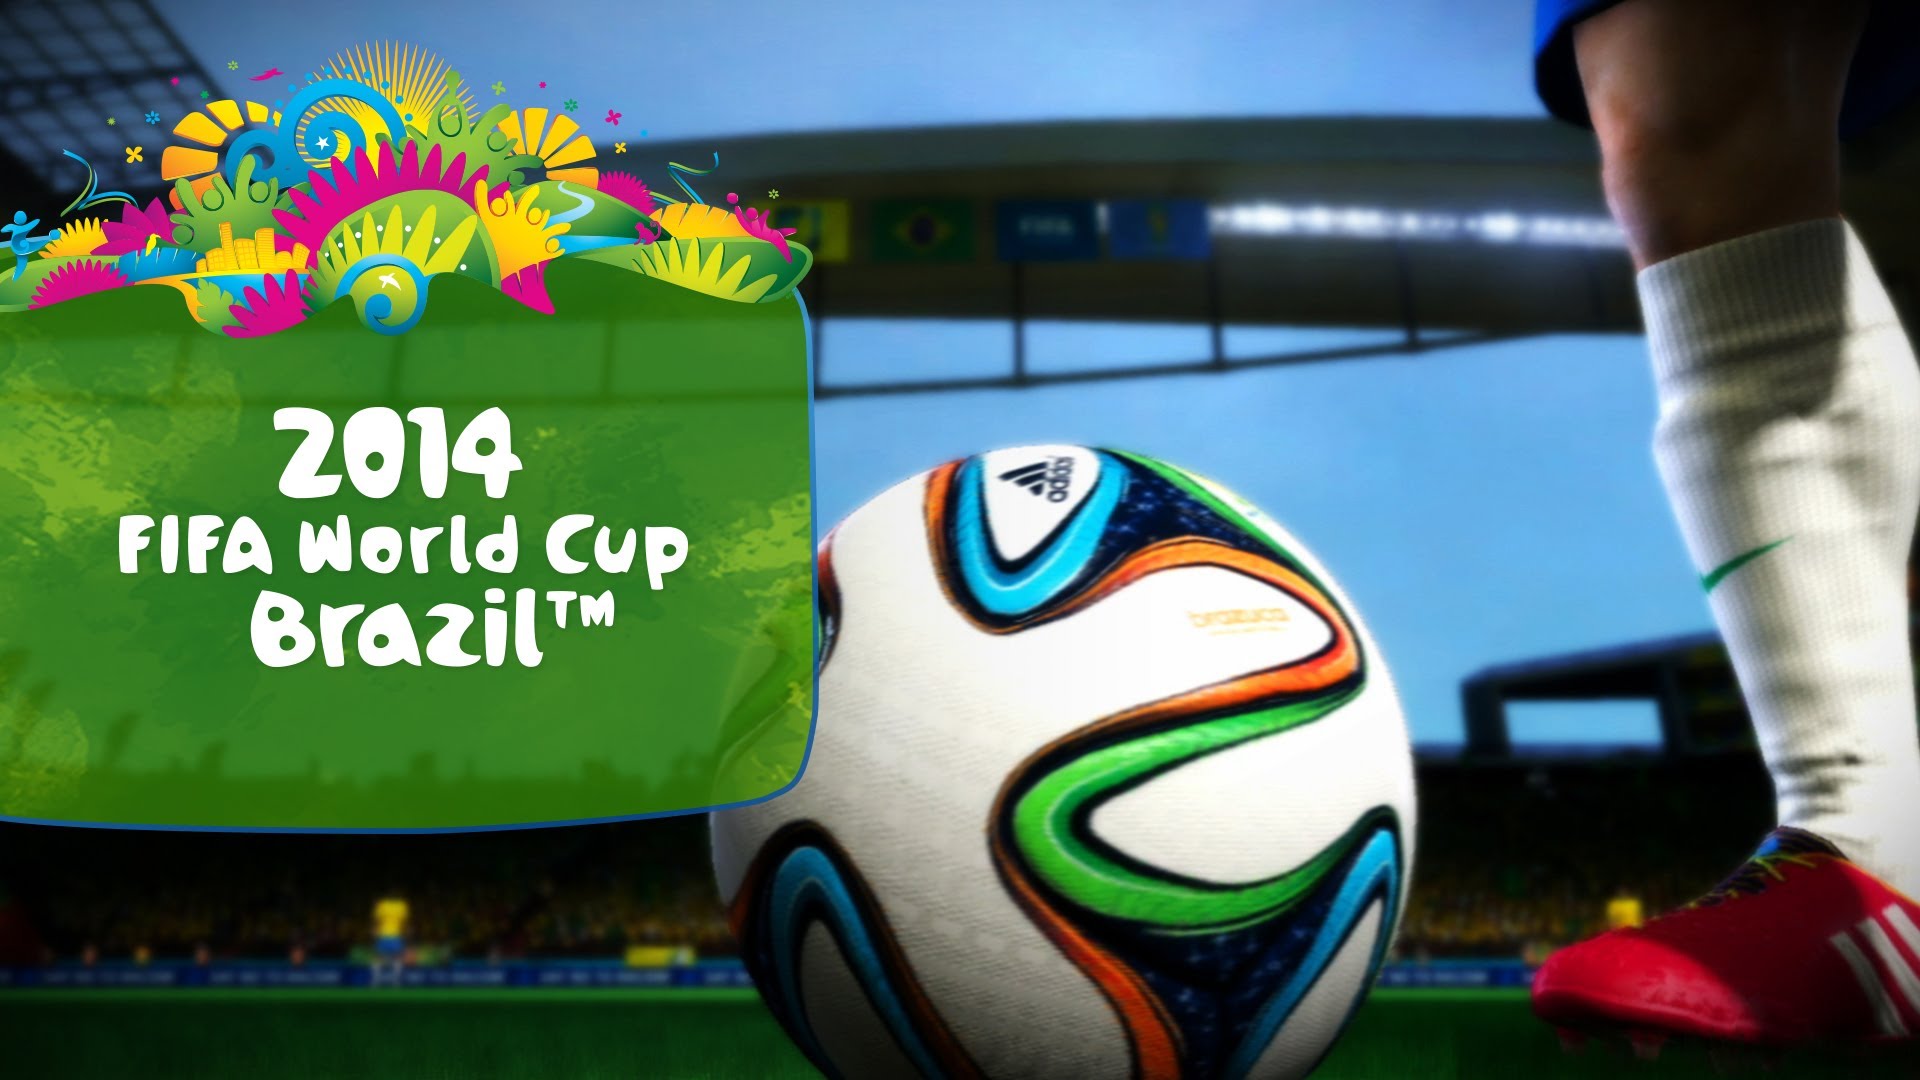 Thơ mừng World Cup 2014 đậm chất game thủ